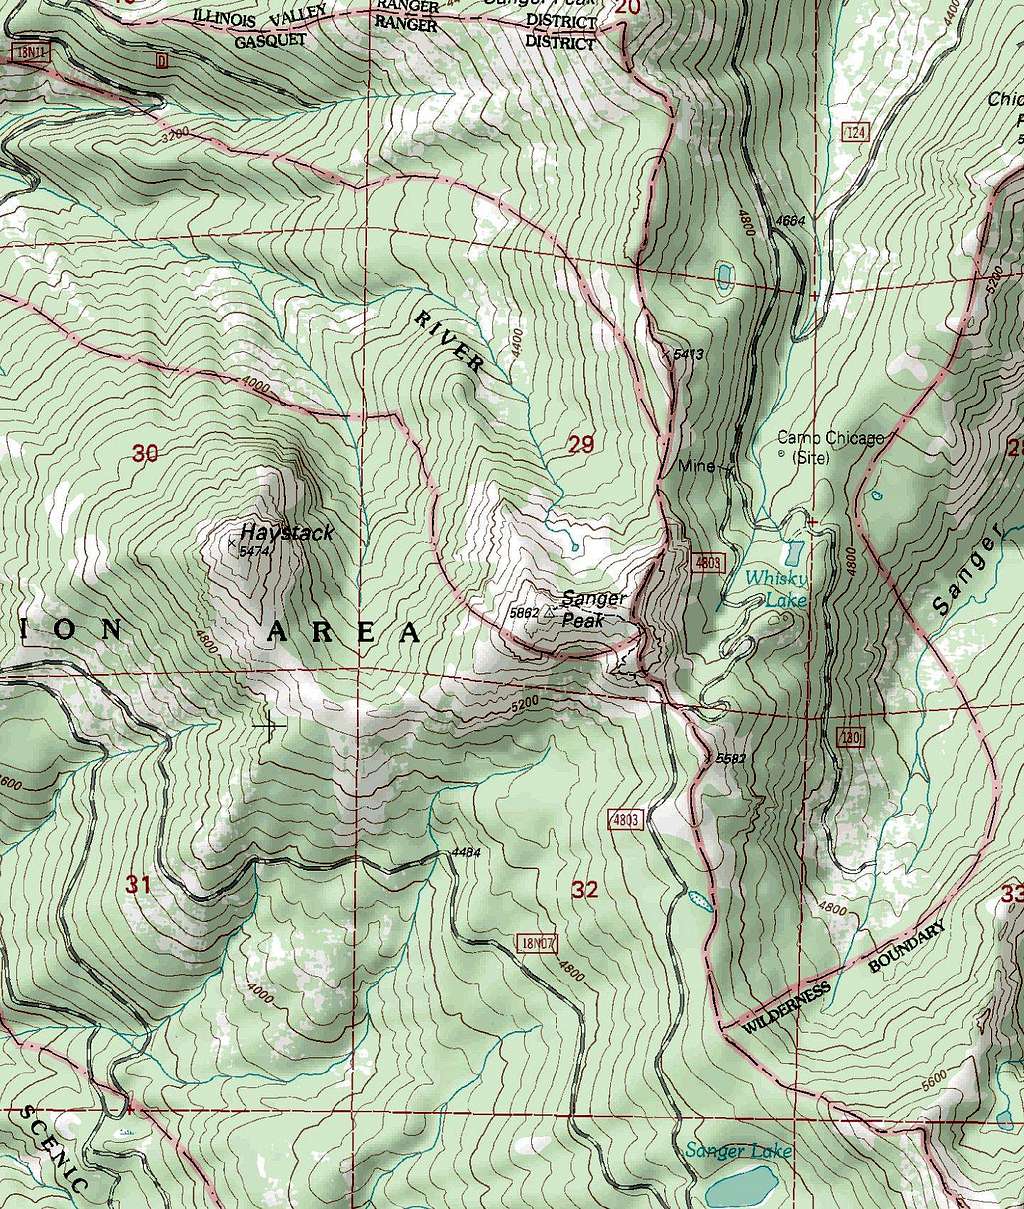 Sanger Peak Map